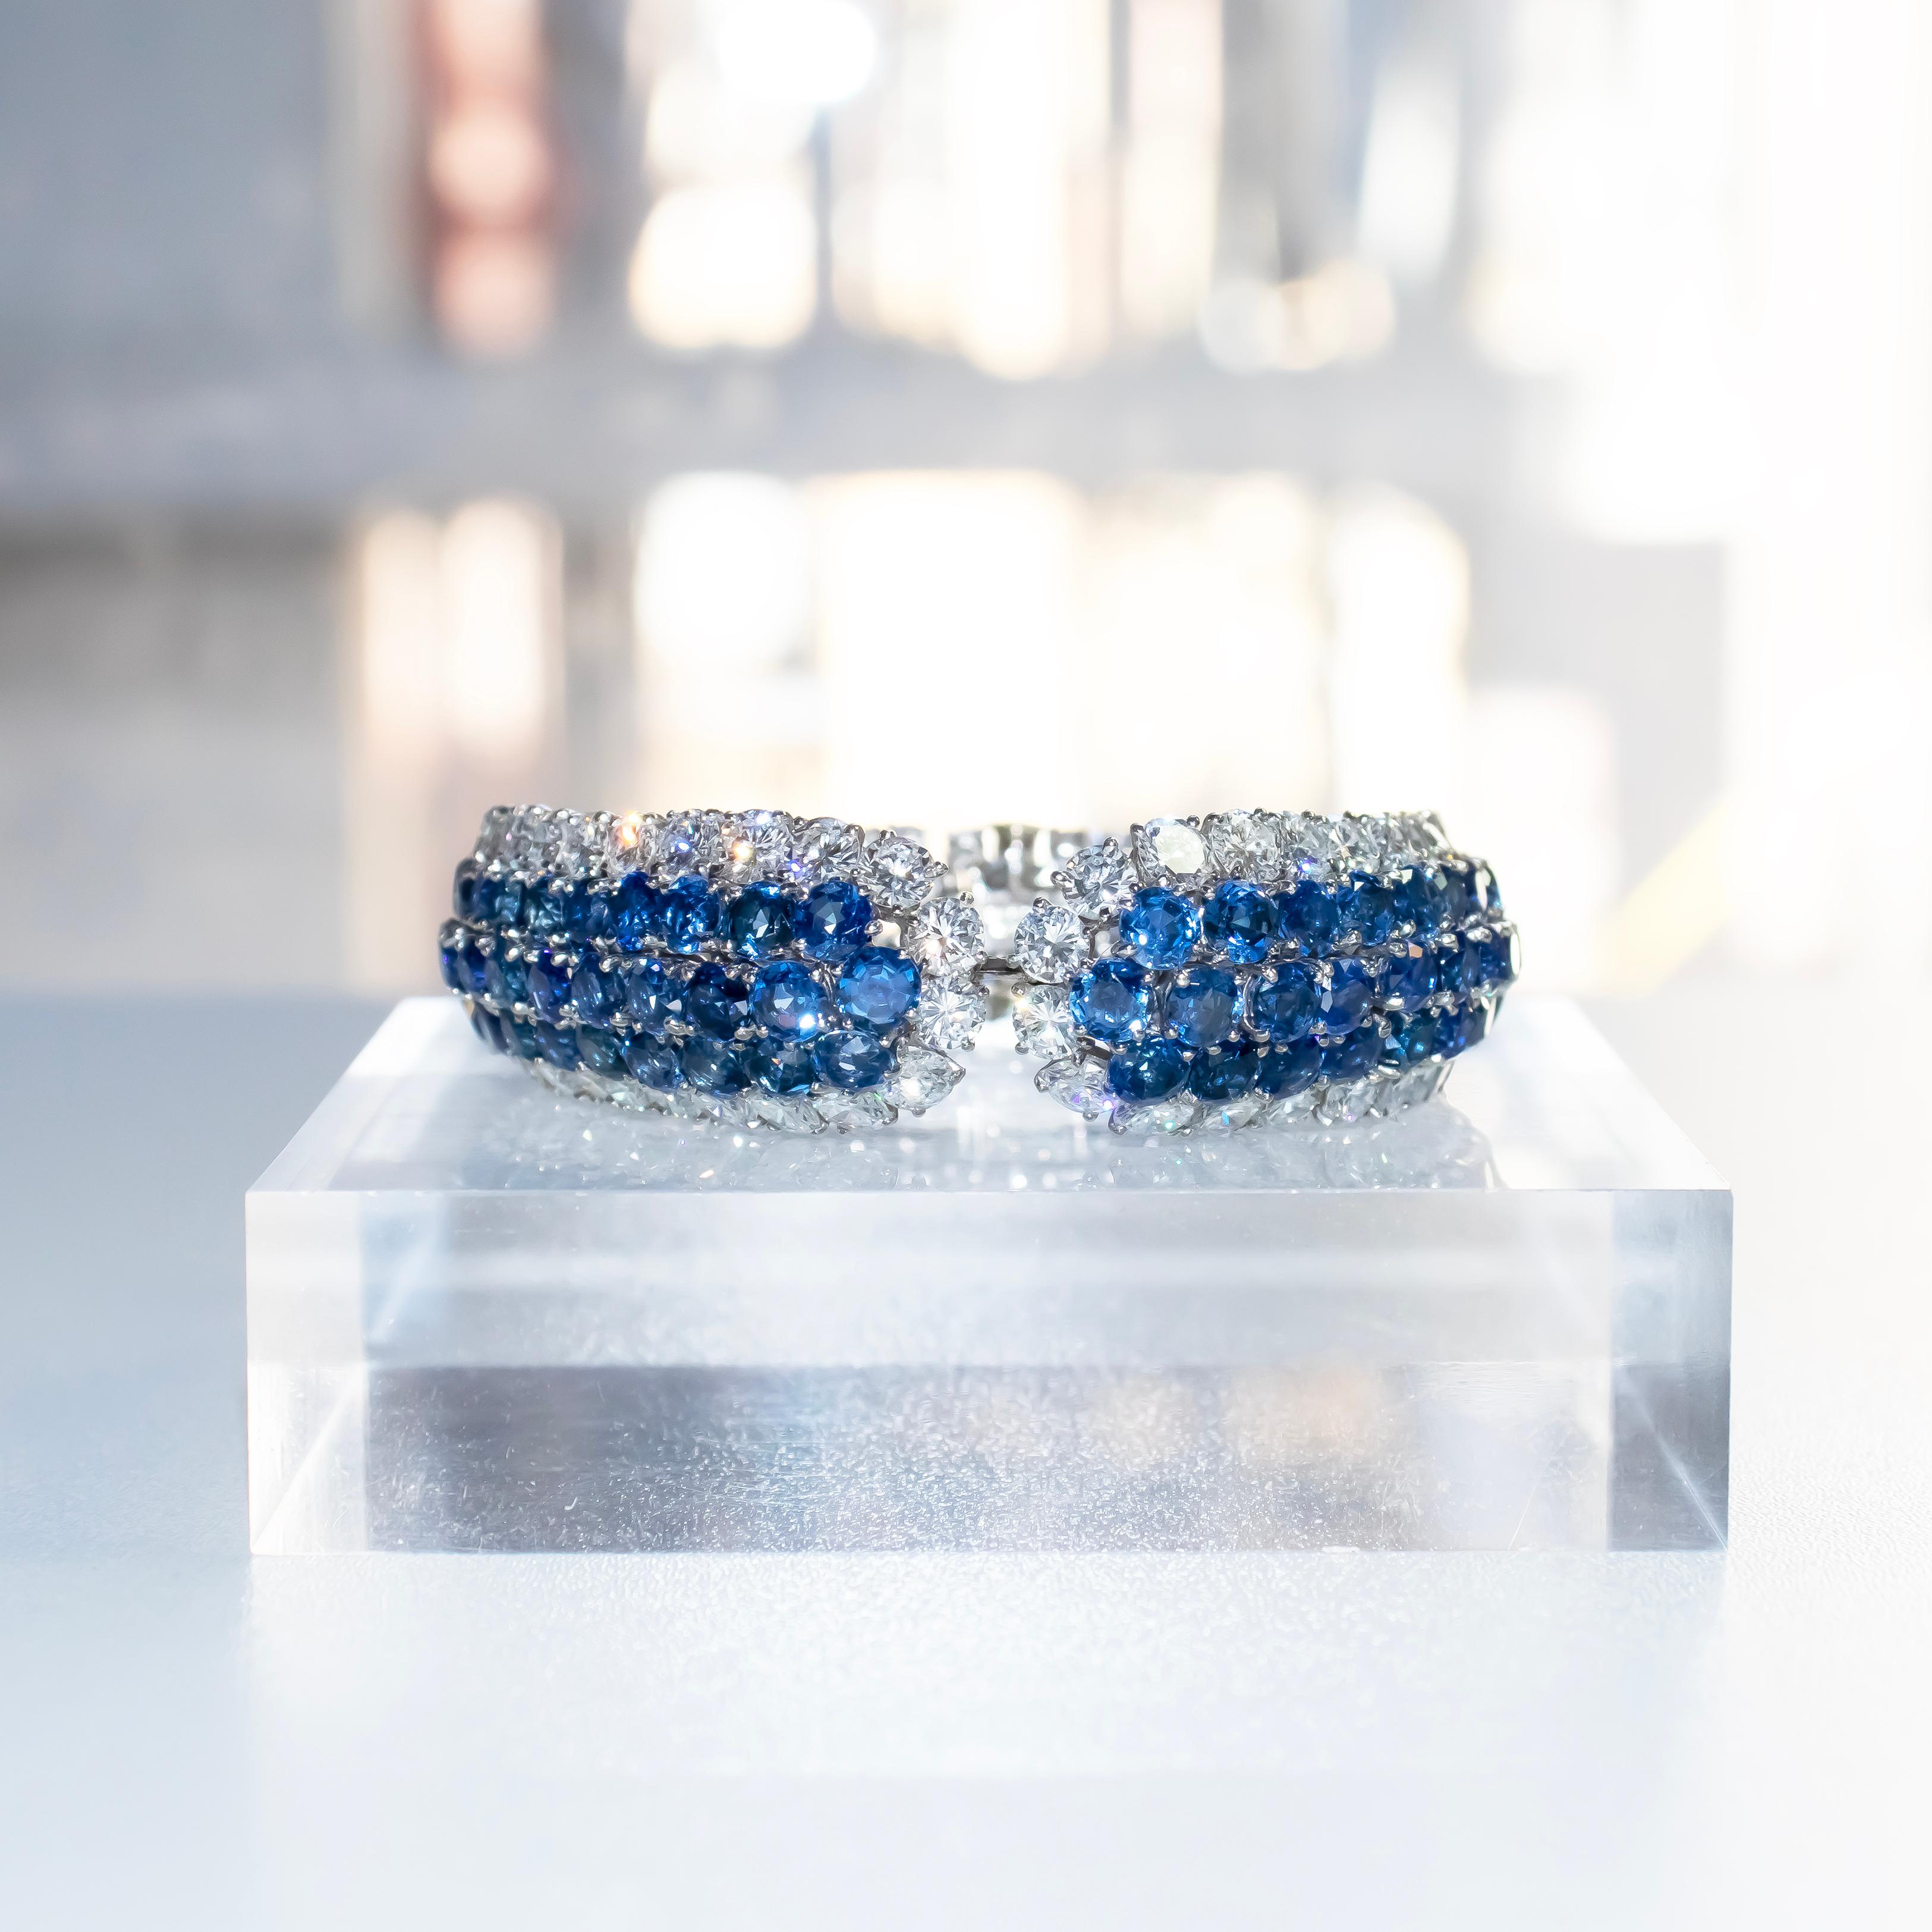 Dieses exquisite, handgefertigte Armband von Van Cleef & Arpels ist ein meisterhaftes Kunstwerk. Mit einer schillernden Auswahl von 132 blauen Saphiren in abgestuften Größen (von 3,5 mm bis 5,0 mm) und 92 runden Diamanten im Brillantschliff = ca.